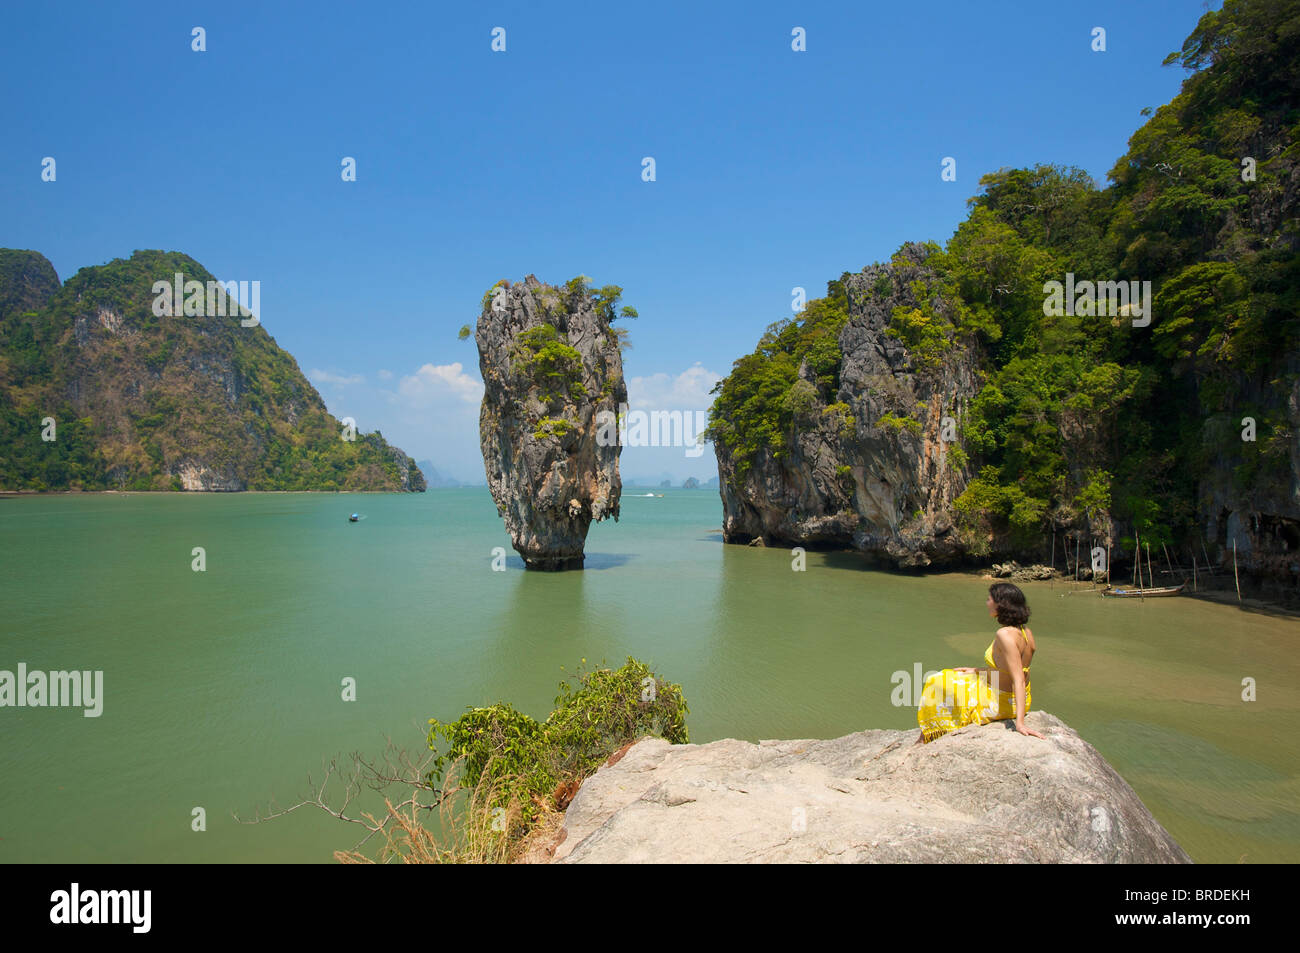 James Bond Island, Phang Nga Bay National Park, Phuket, Thailand Stock ...